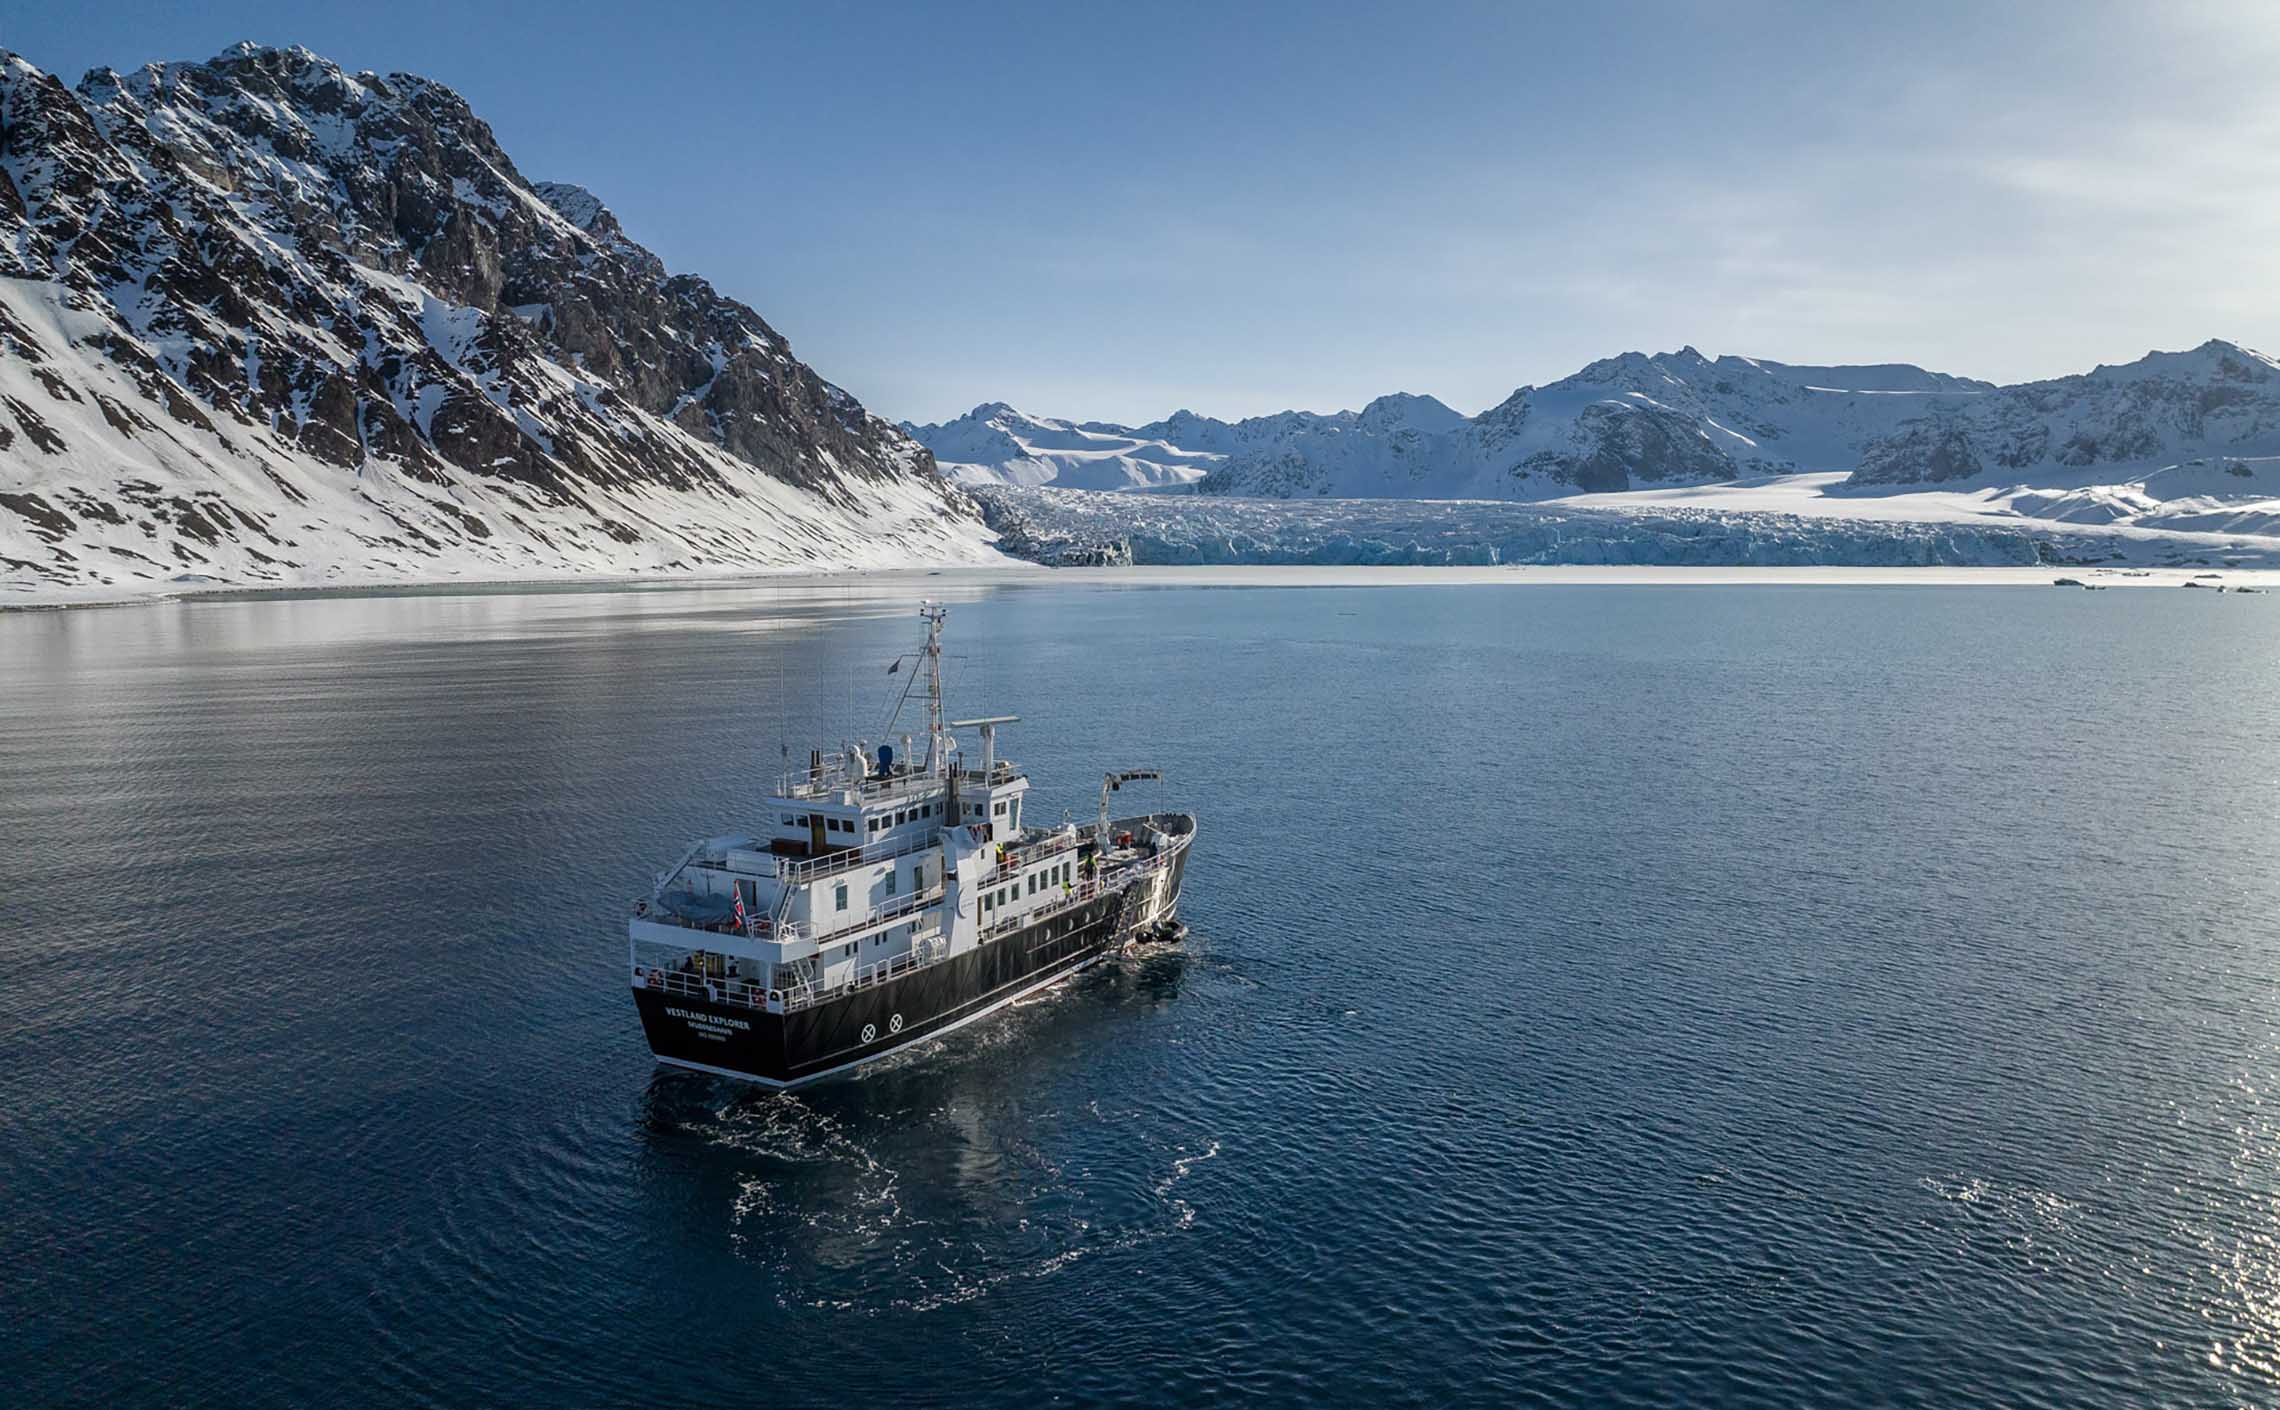 L'Explorer - Yacht d'exploration polaire